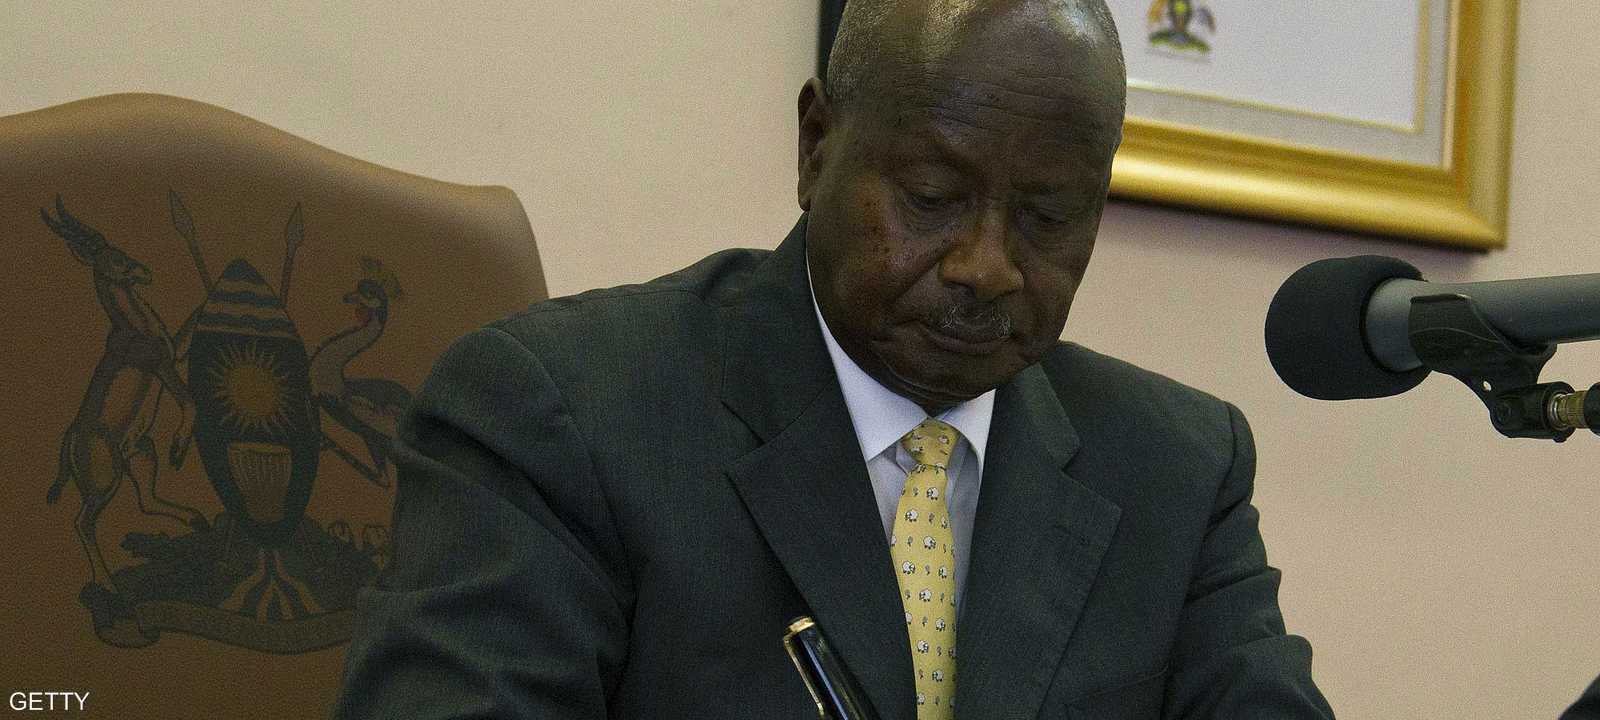 رئيس أوغندا يوقع على مشروع قانون مكافحة المثلية الجنسية في 24 فبراير 2014.